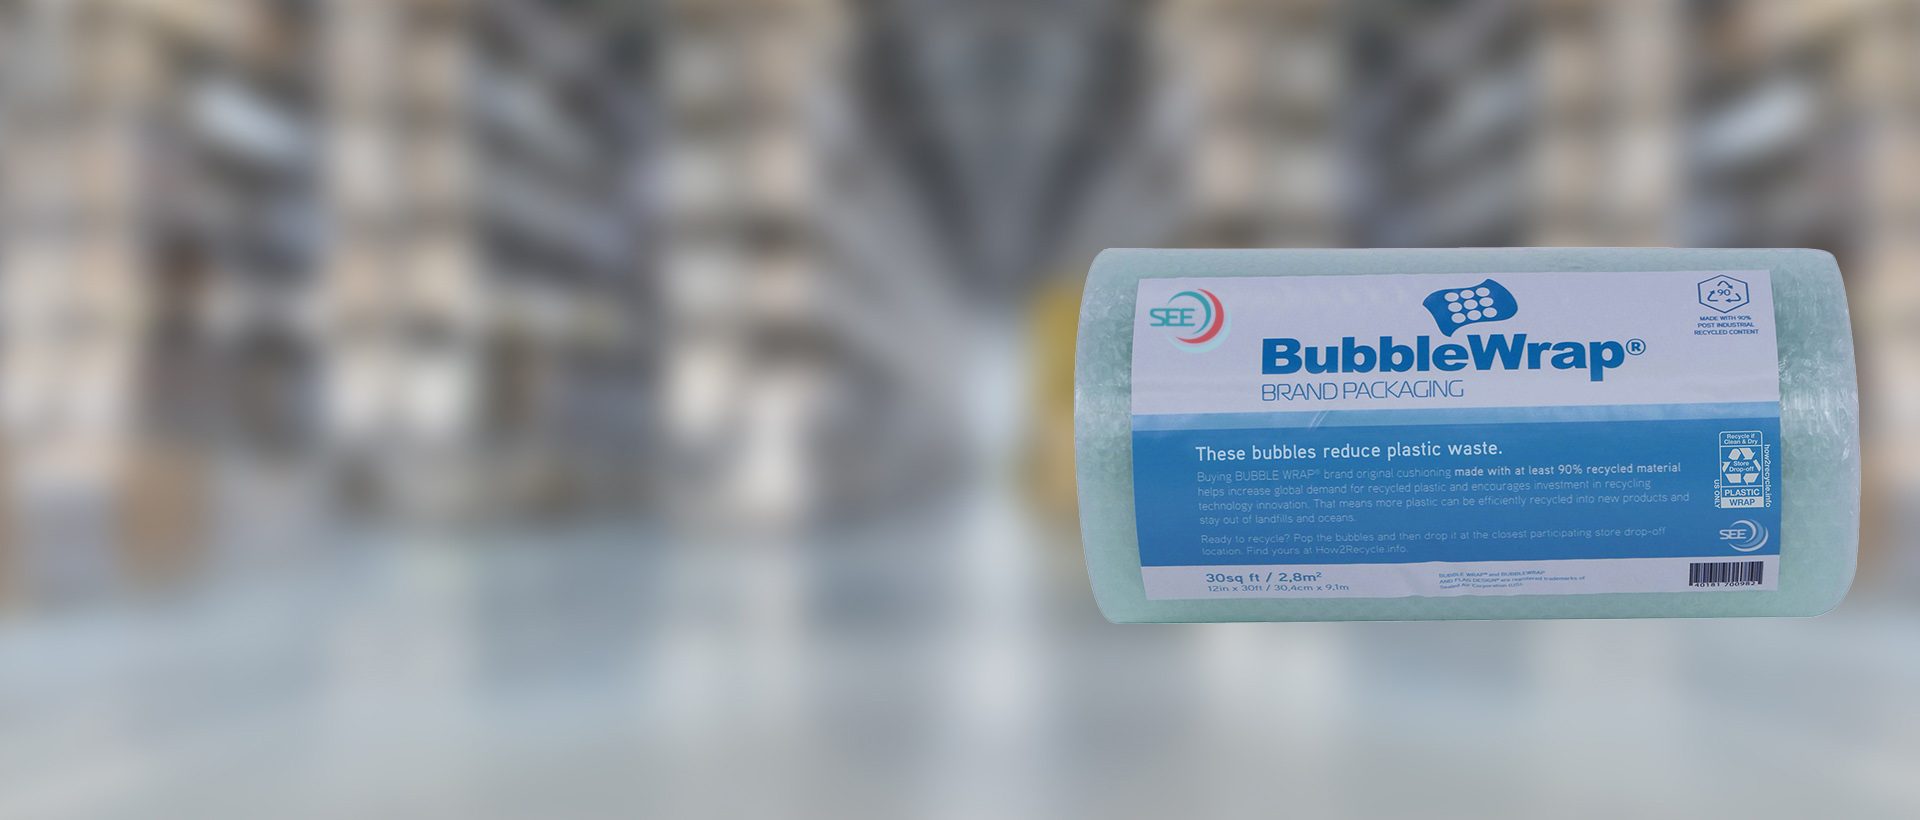 embalaje marca bubble wrap con contenido reciclado